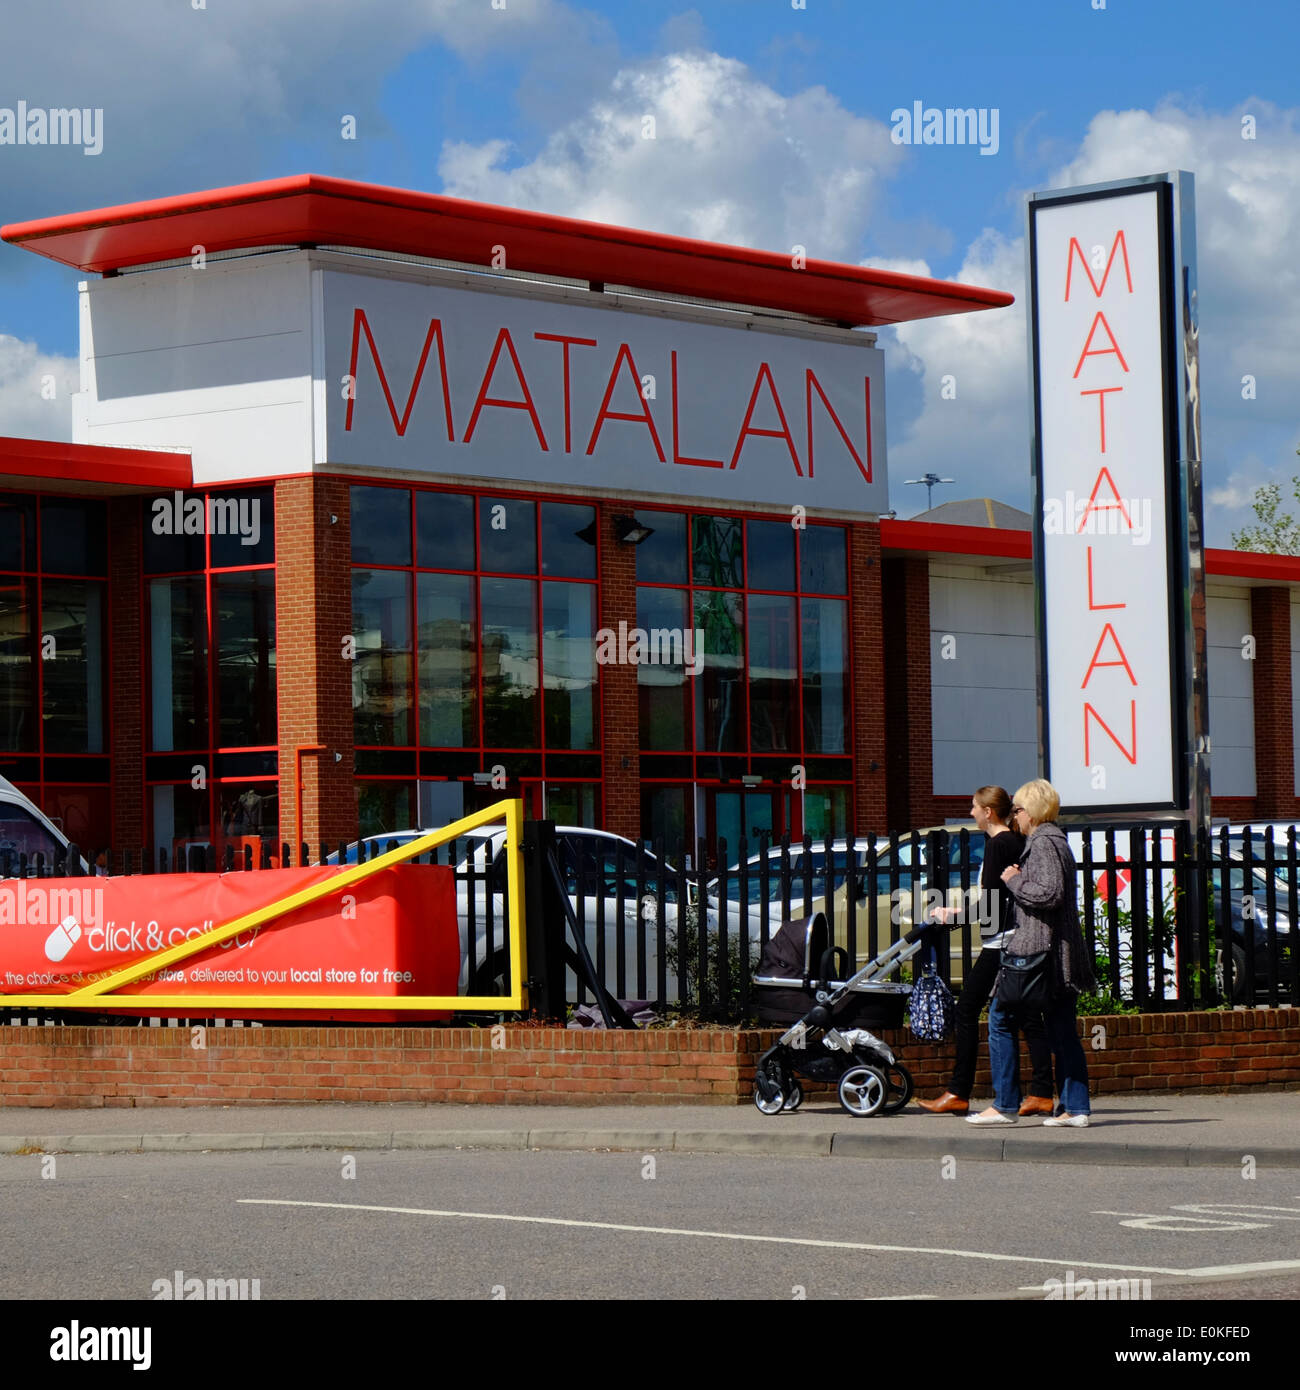 Matalan retail store in Luton Stock Photo